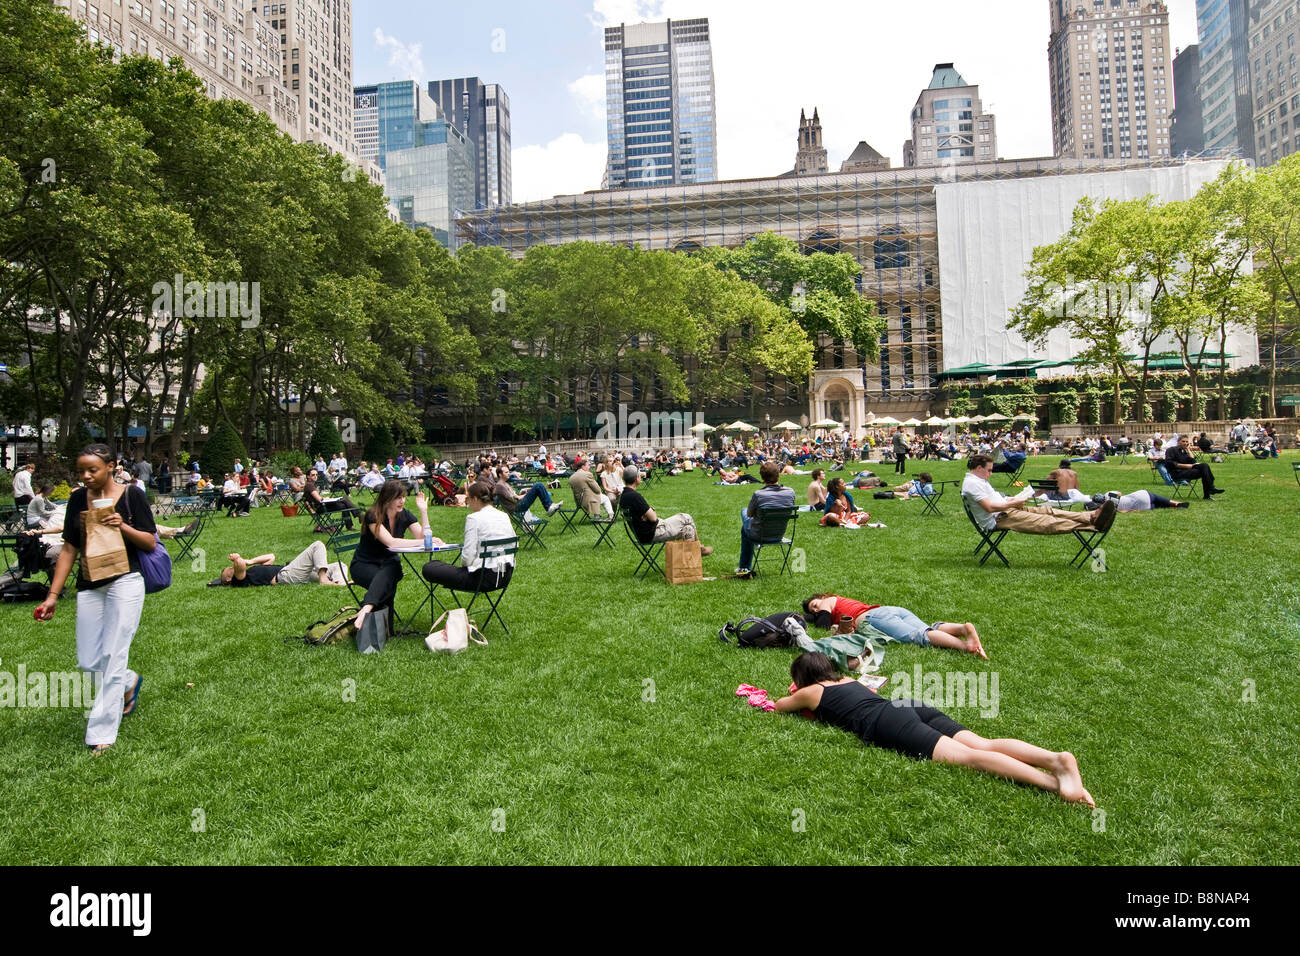 Le persone sedute a sdraio e rilassarsi sul prato in un giardino pubblico Foto Stock